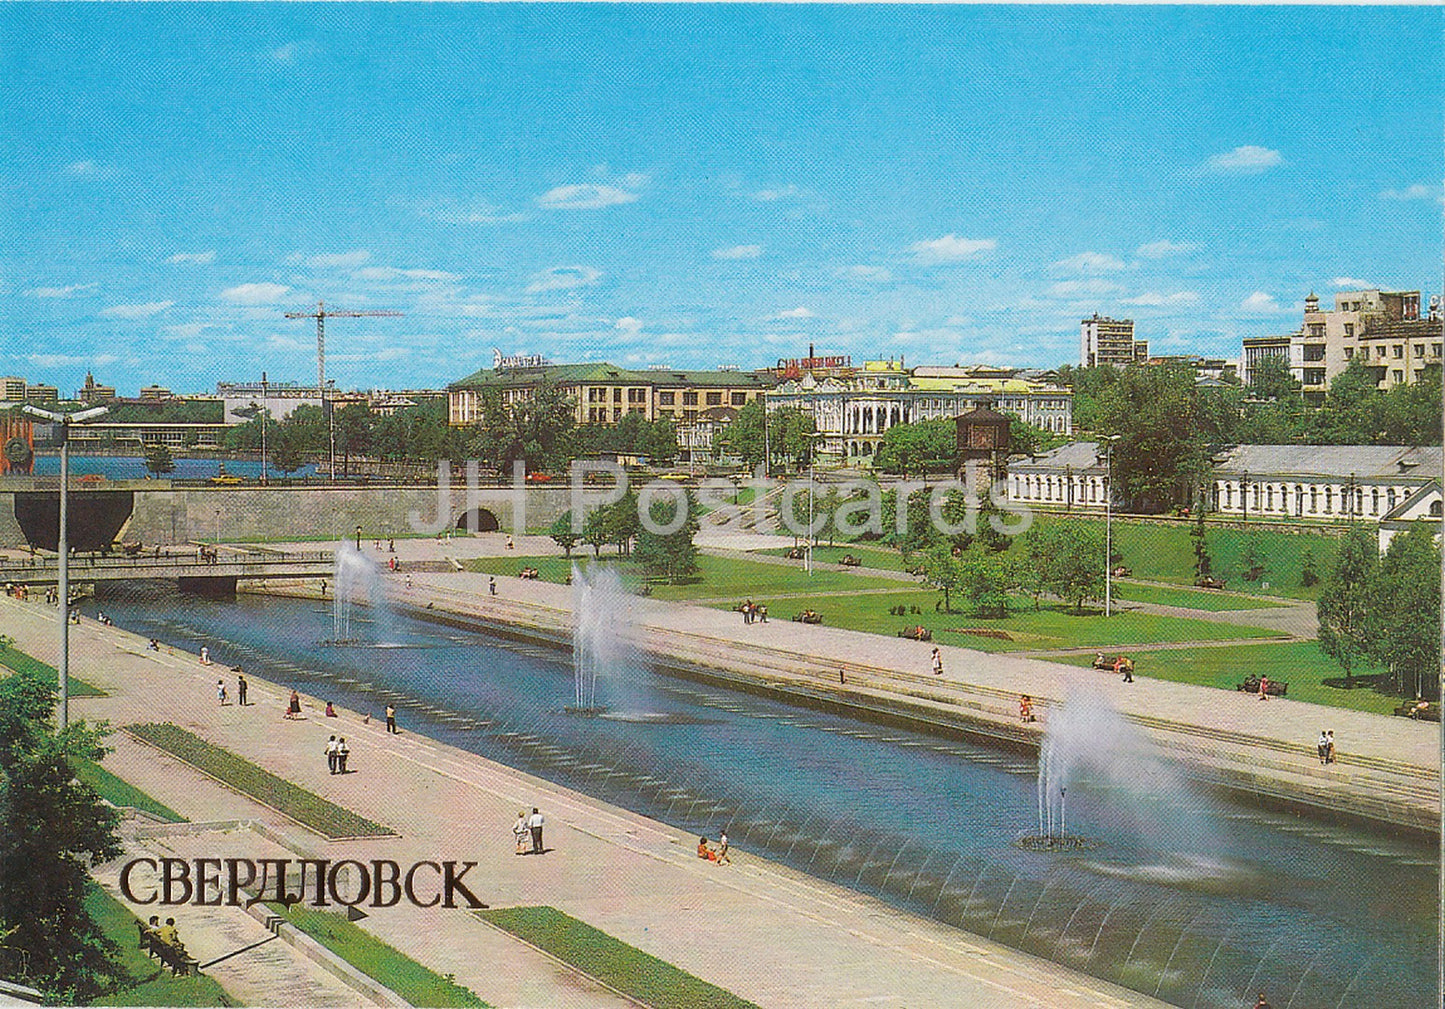 Swerdlowsk - Jekaterinburg - Historischer Platz - 1986 - Russland UdSSR - unbenutzt